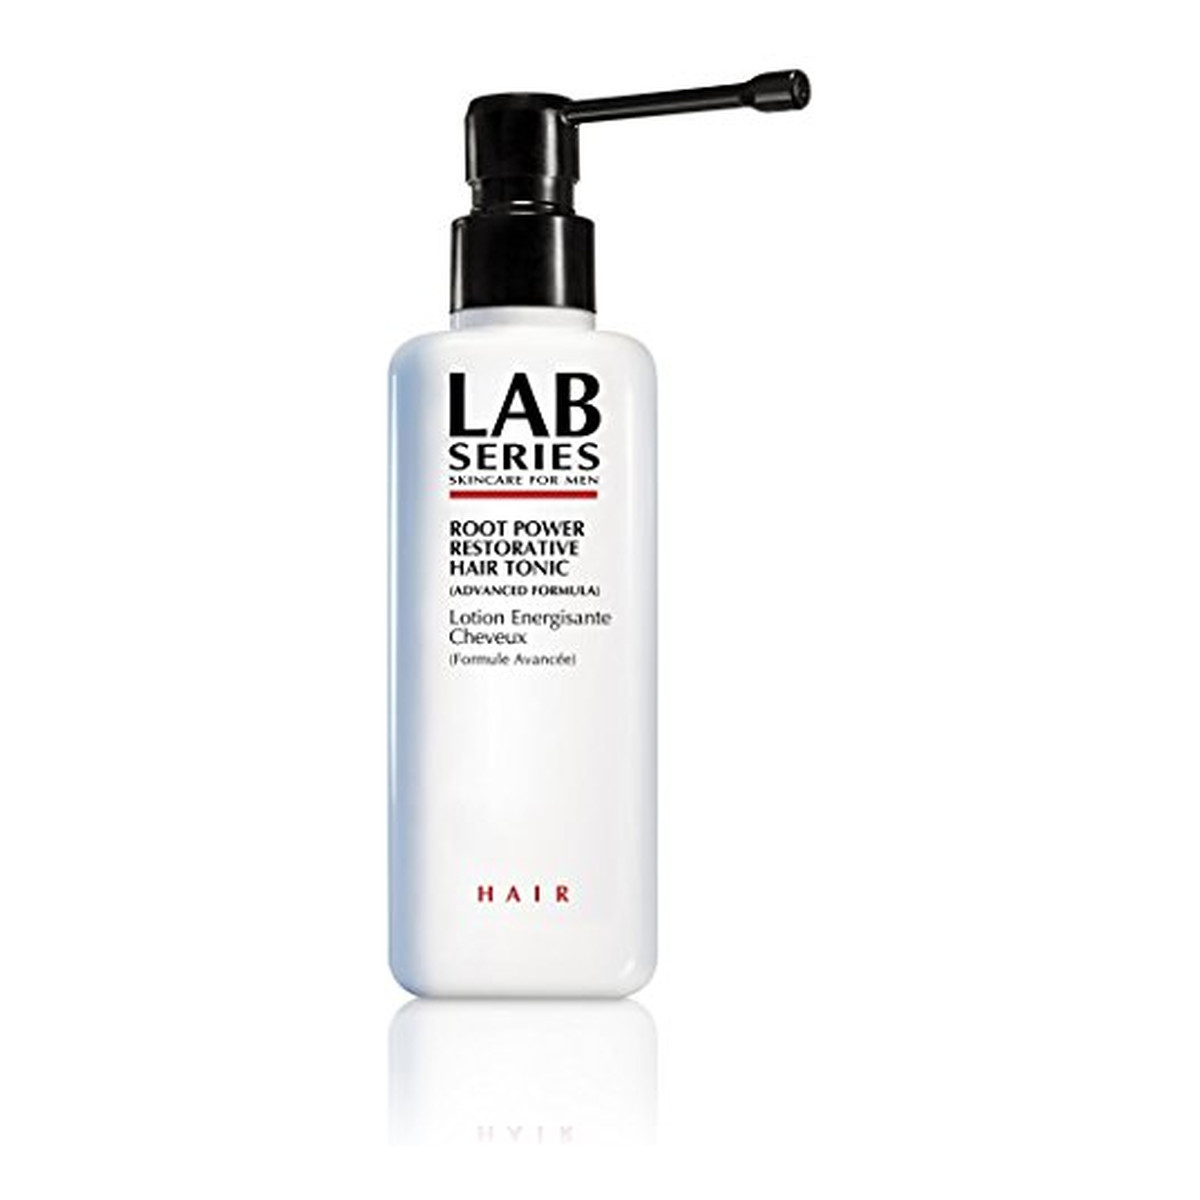 Lab Series Root Power Restorative Hair Tonic Serum przeciw wypadaniu włosów 200ml